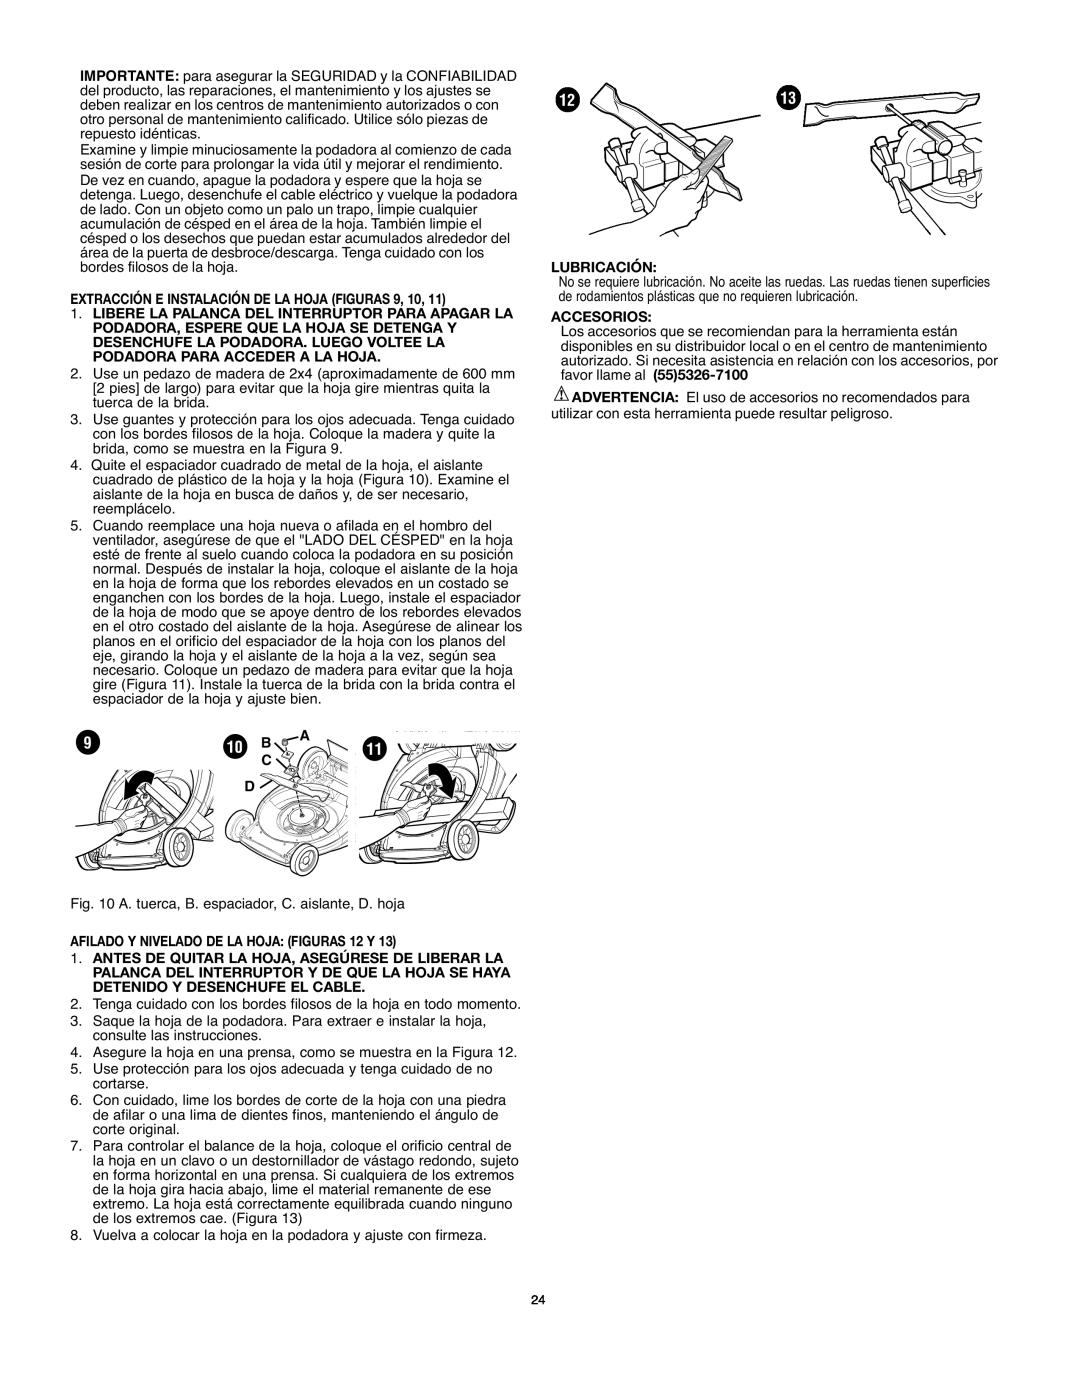 Black & Decker MM875 instruction manual 10 B, Extracción E Instalación De La Hoja Figuras, Lubricación, Accesorios 